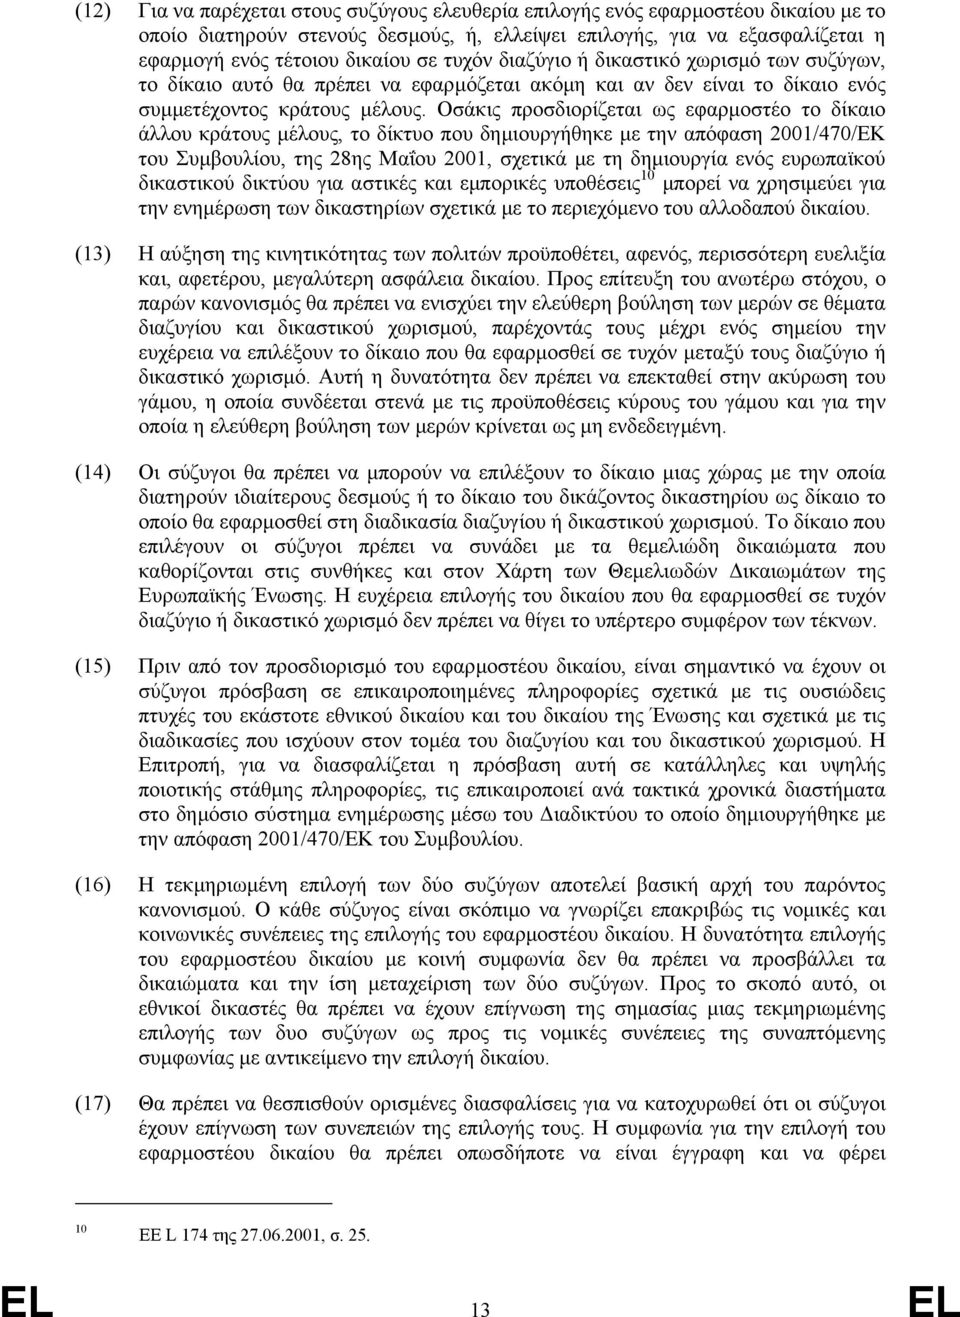 Οσάκις προσδιορίζεται ως εφαρµοστέο το δίκαιο άλλου κράτους µέλους, το δίκτυο που δηµιουργήθηκε µε την απόφαση 2001/470/ΕΚ του Συµβουλίου, της 28ης Μαΐου 2001, σχετικά µε τη δηµιουργία ενός